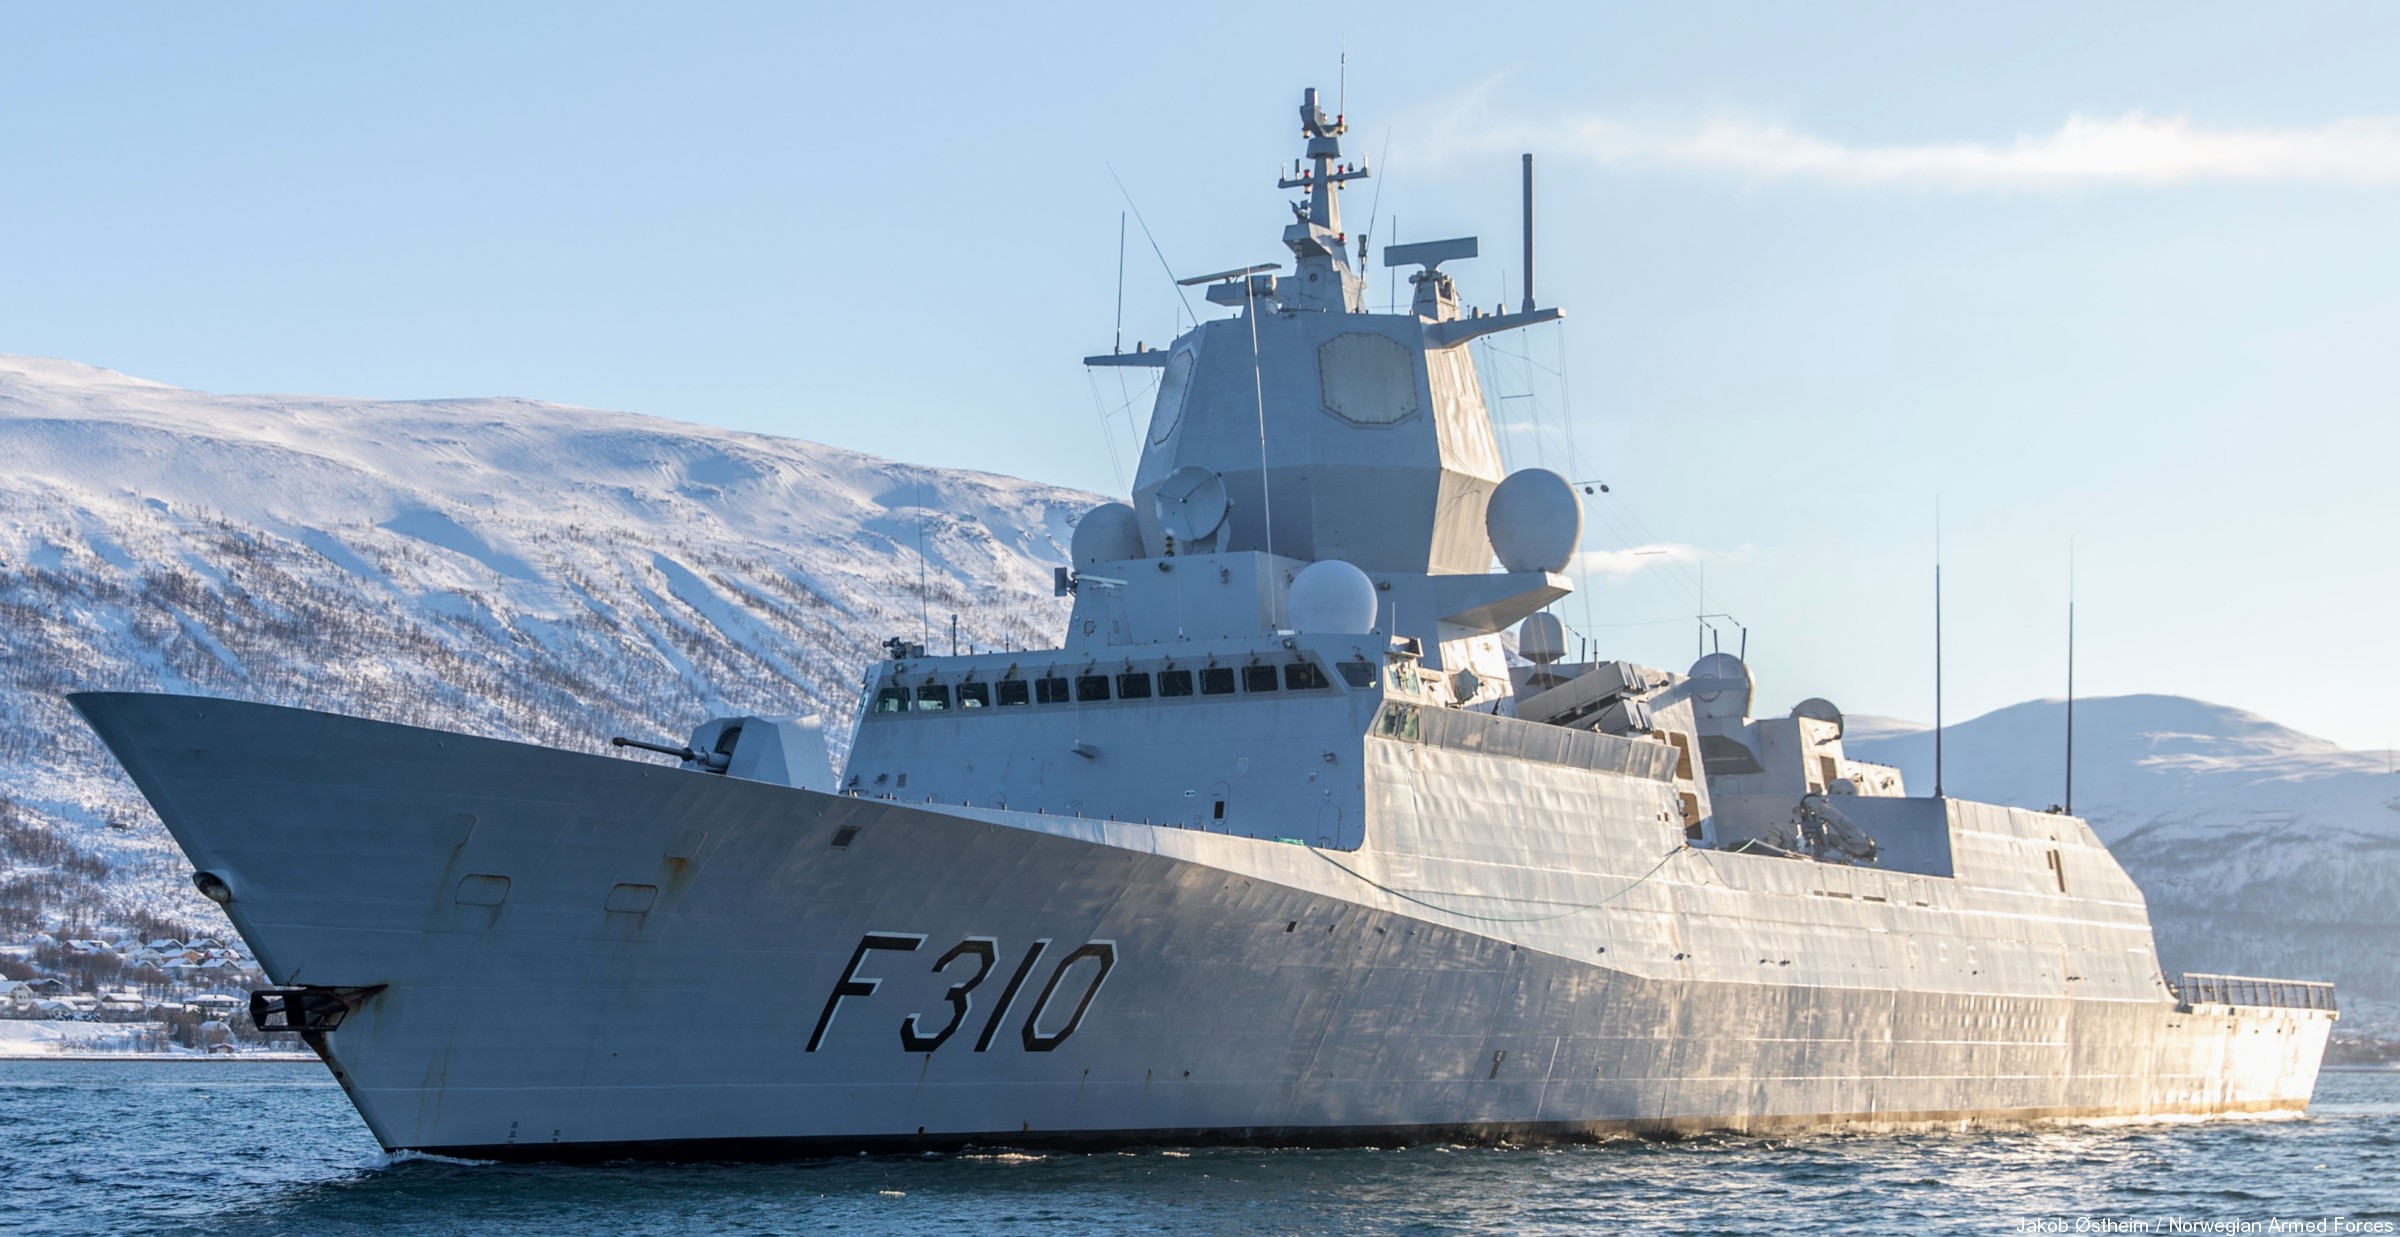 f-310 fridtjof nansen hnoms knm frigate royal norwegian navy sjoforsvaret 03